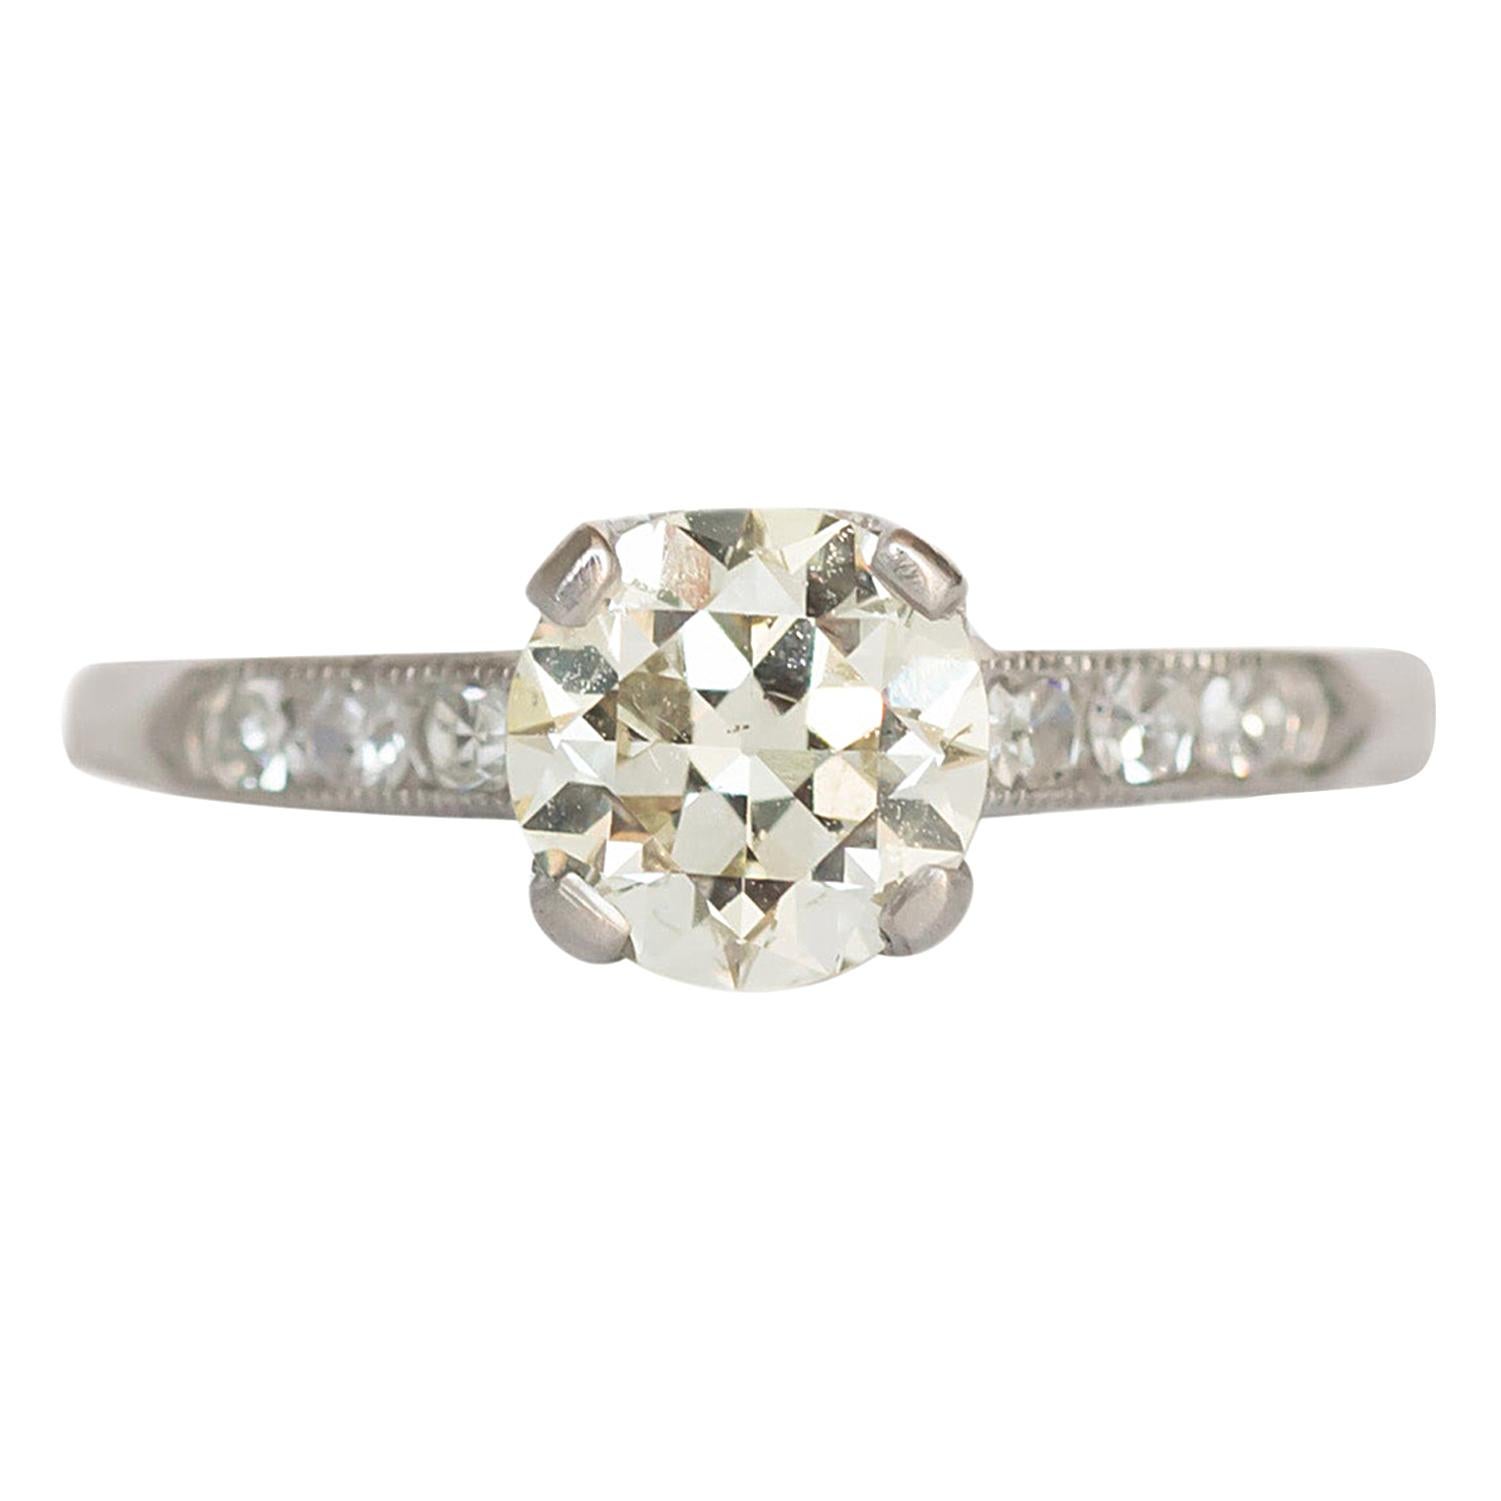 GIA Certified 1.08 Carat Diamond Platinum Engagement Ring